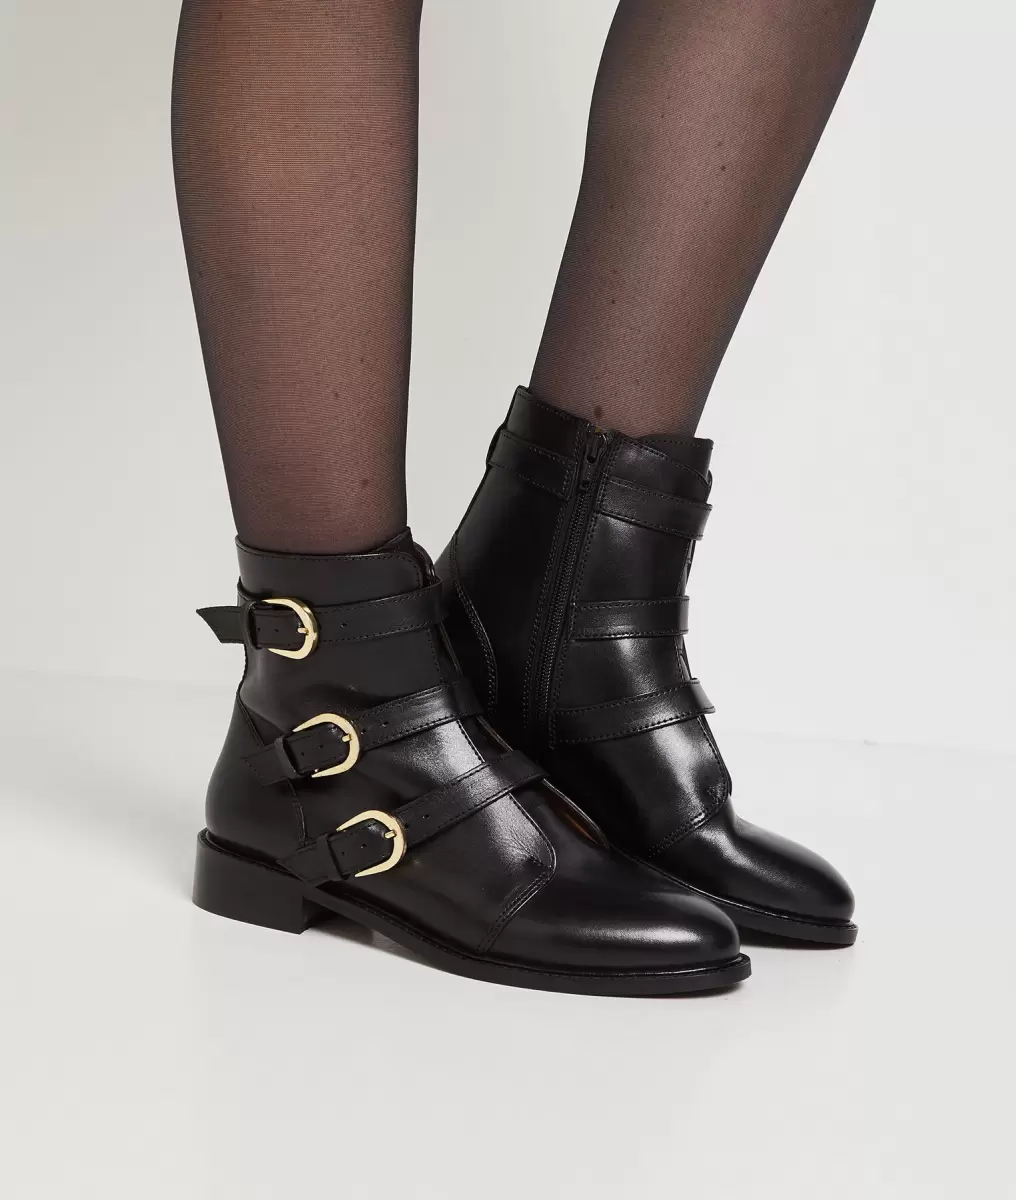 Bottines En Cuir Femme Prix D'achat Noir Chaussures Grain De Malic Femme - 1